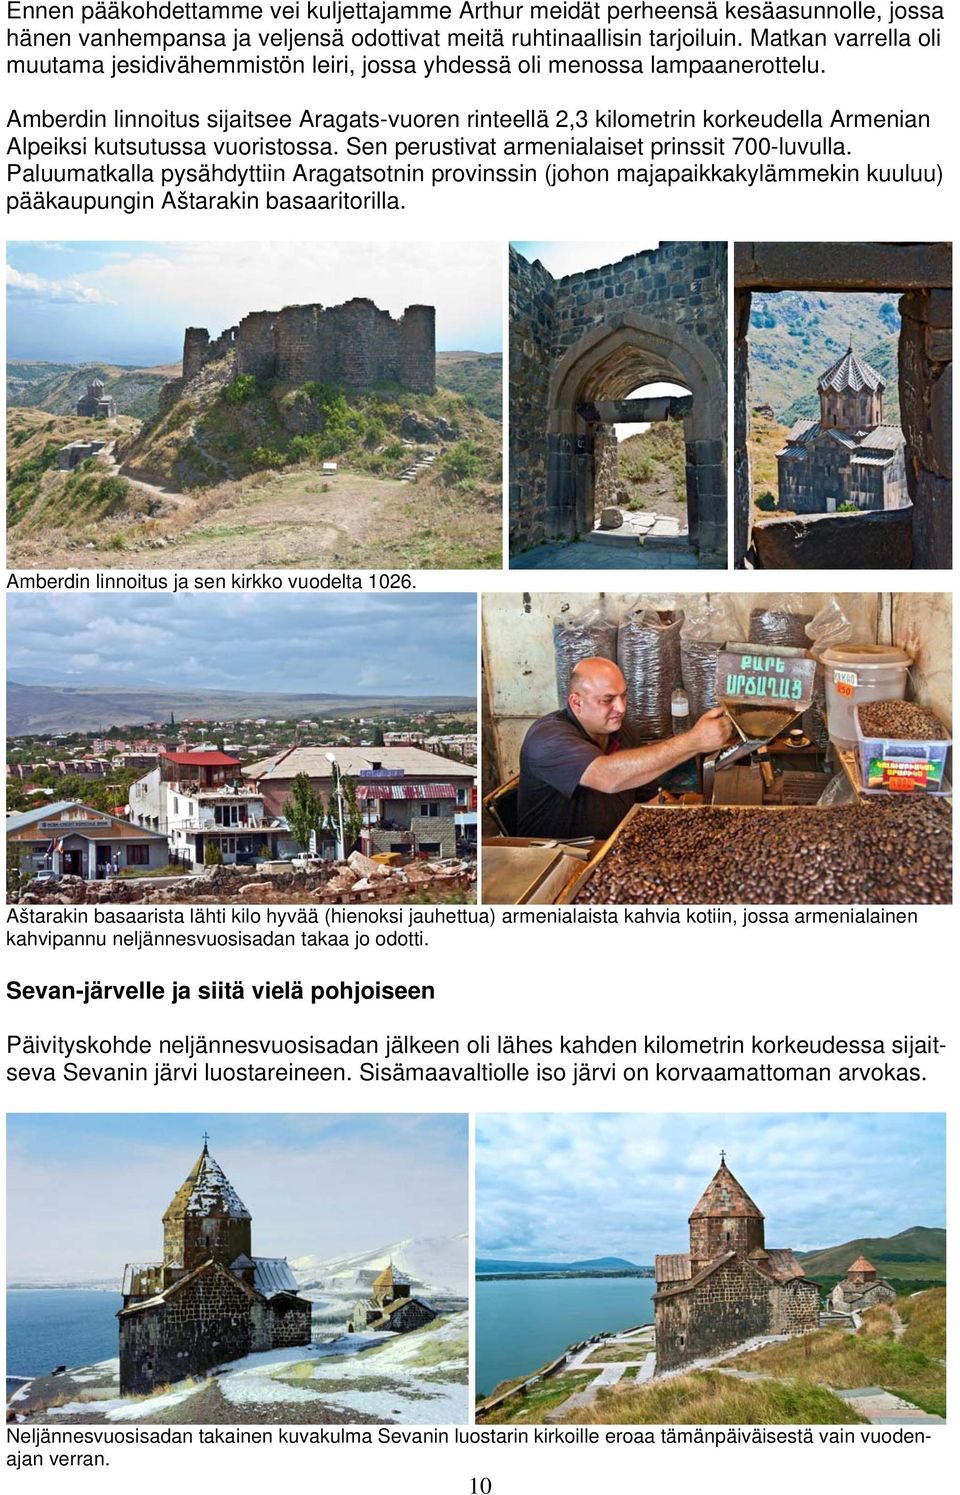 Amberdin linnoitus sijaitsee Aragats-vuoren rinteellä 2,3 kilometrin korkeudella Armenian Alpeiksi kutsutussa vuoristossa. Sen perustivat armenialaiset prinssit 700-luvulla.